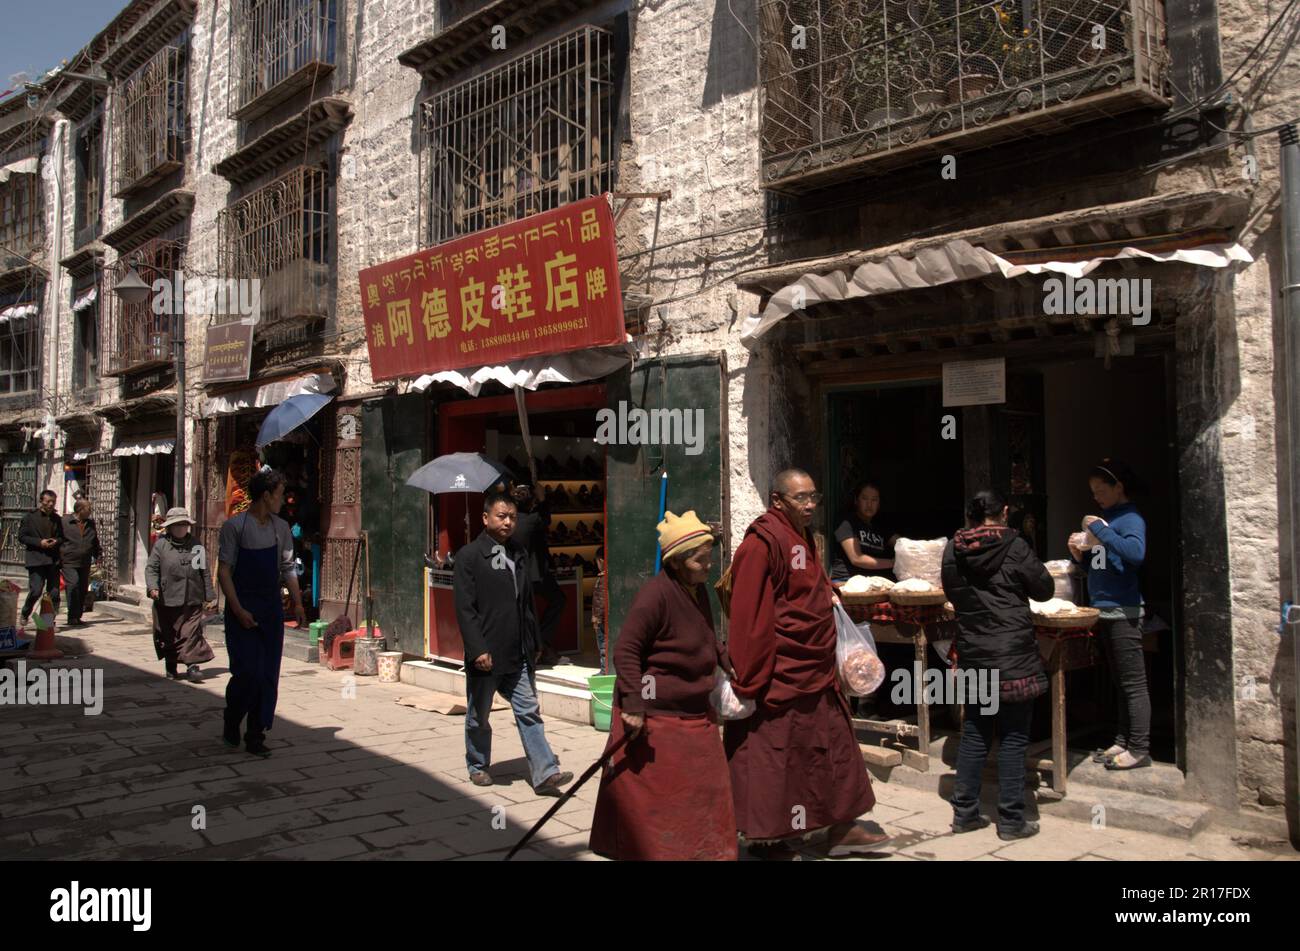 Volksrepublik China, Tibet, Lhasa: Pilger, die um die Barkhor-Kora des Jokhang spazieren. Stockfoto